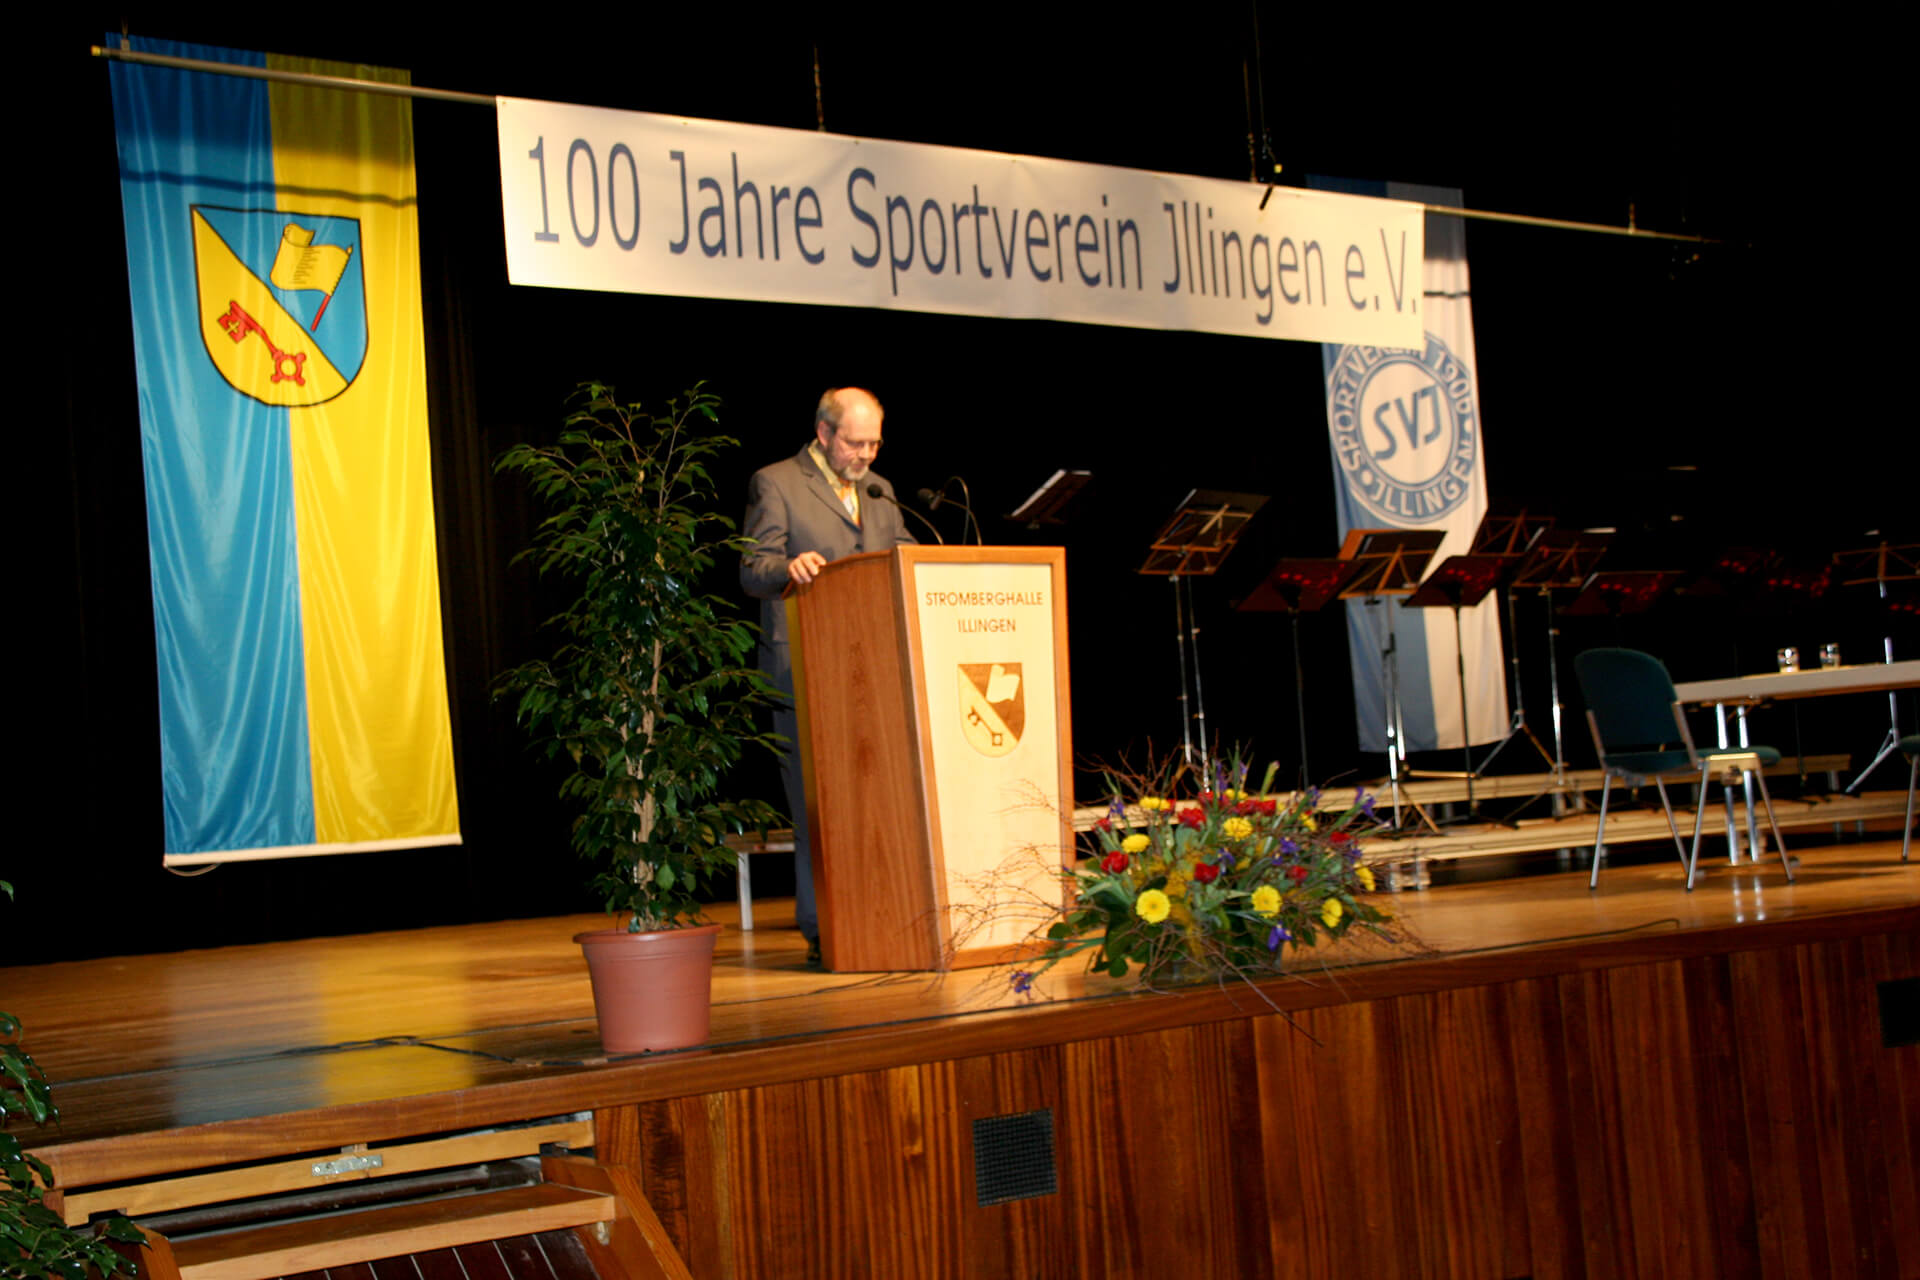 Festakt am 19.03.2006 in der Stromberghalle Illingen